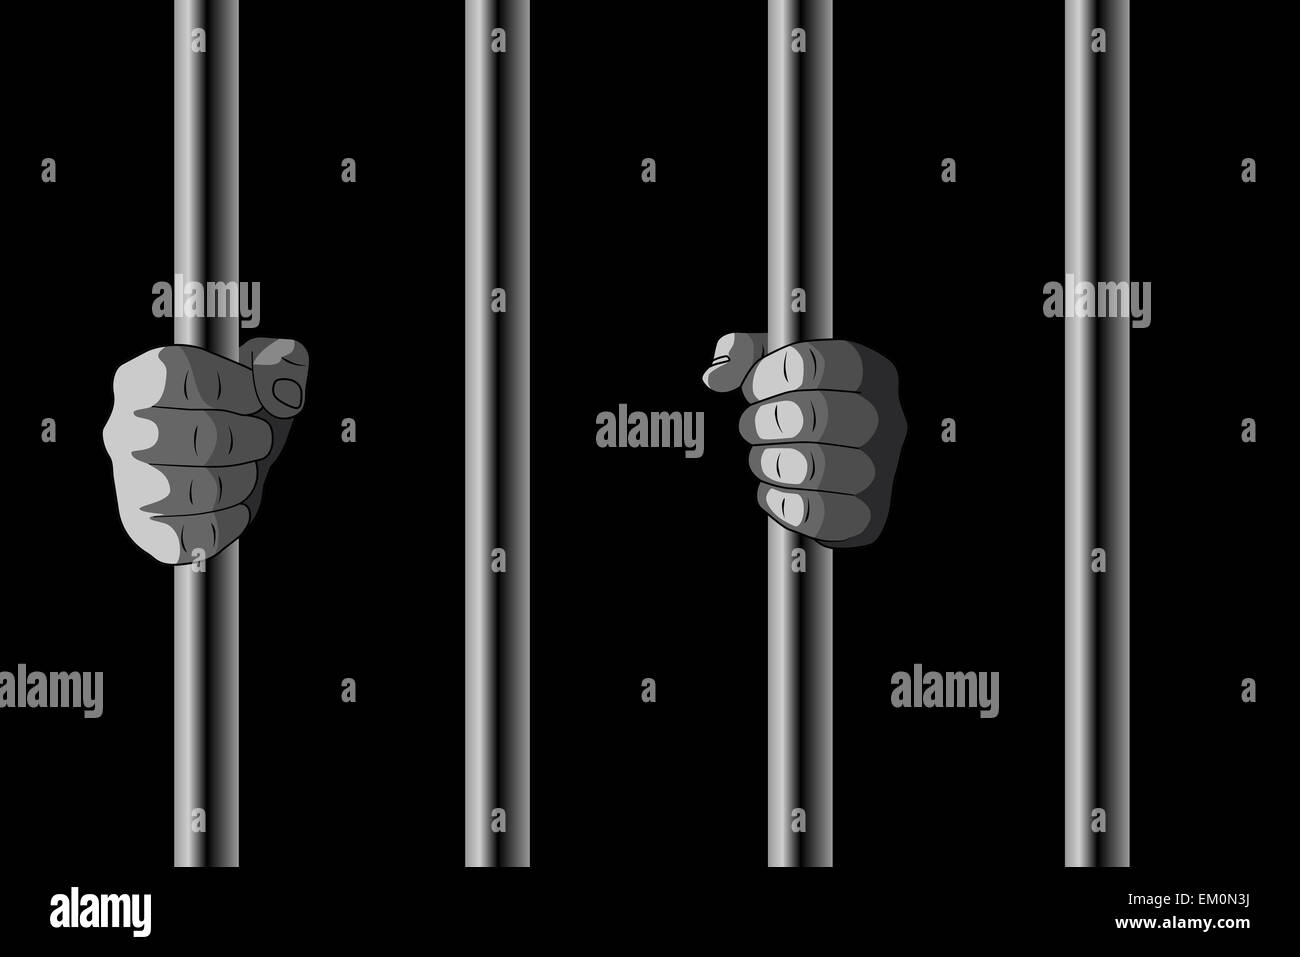 Raster Illustration of Hands Holding Jail Bars Stock Photo